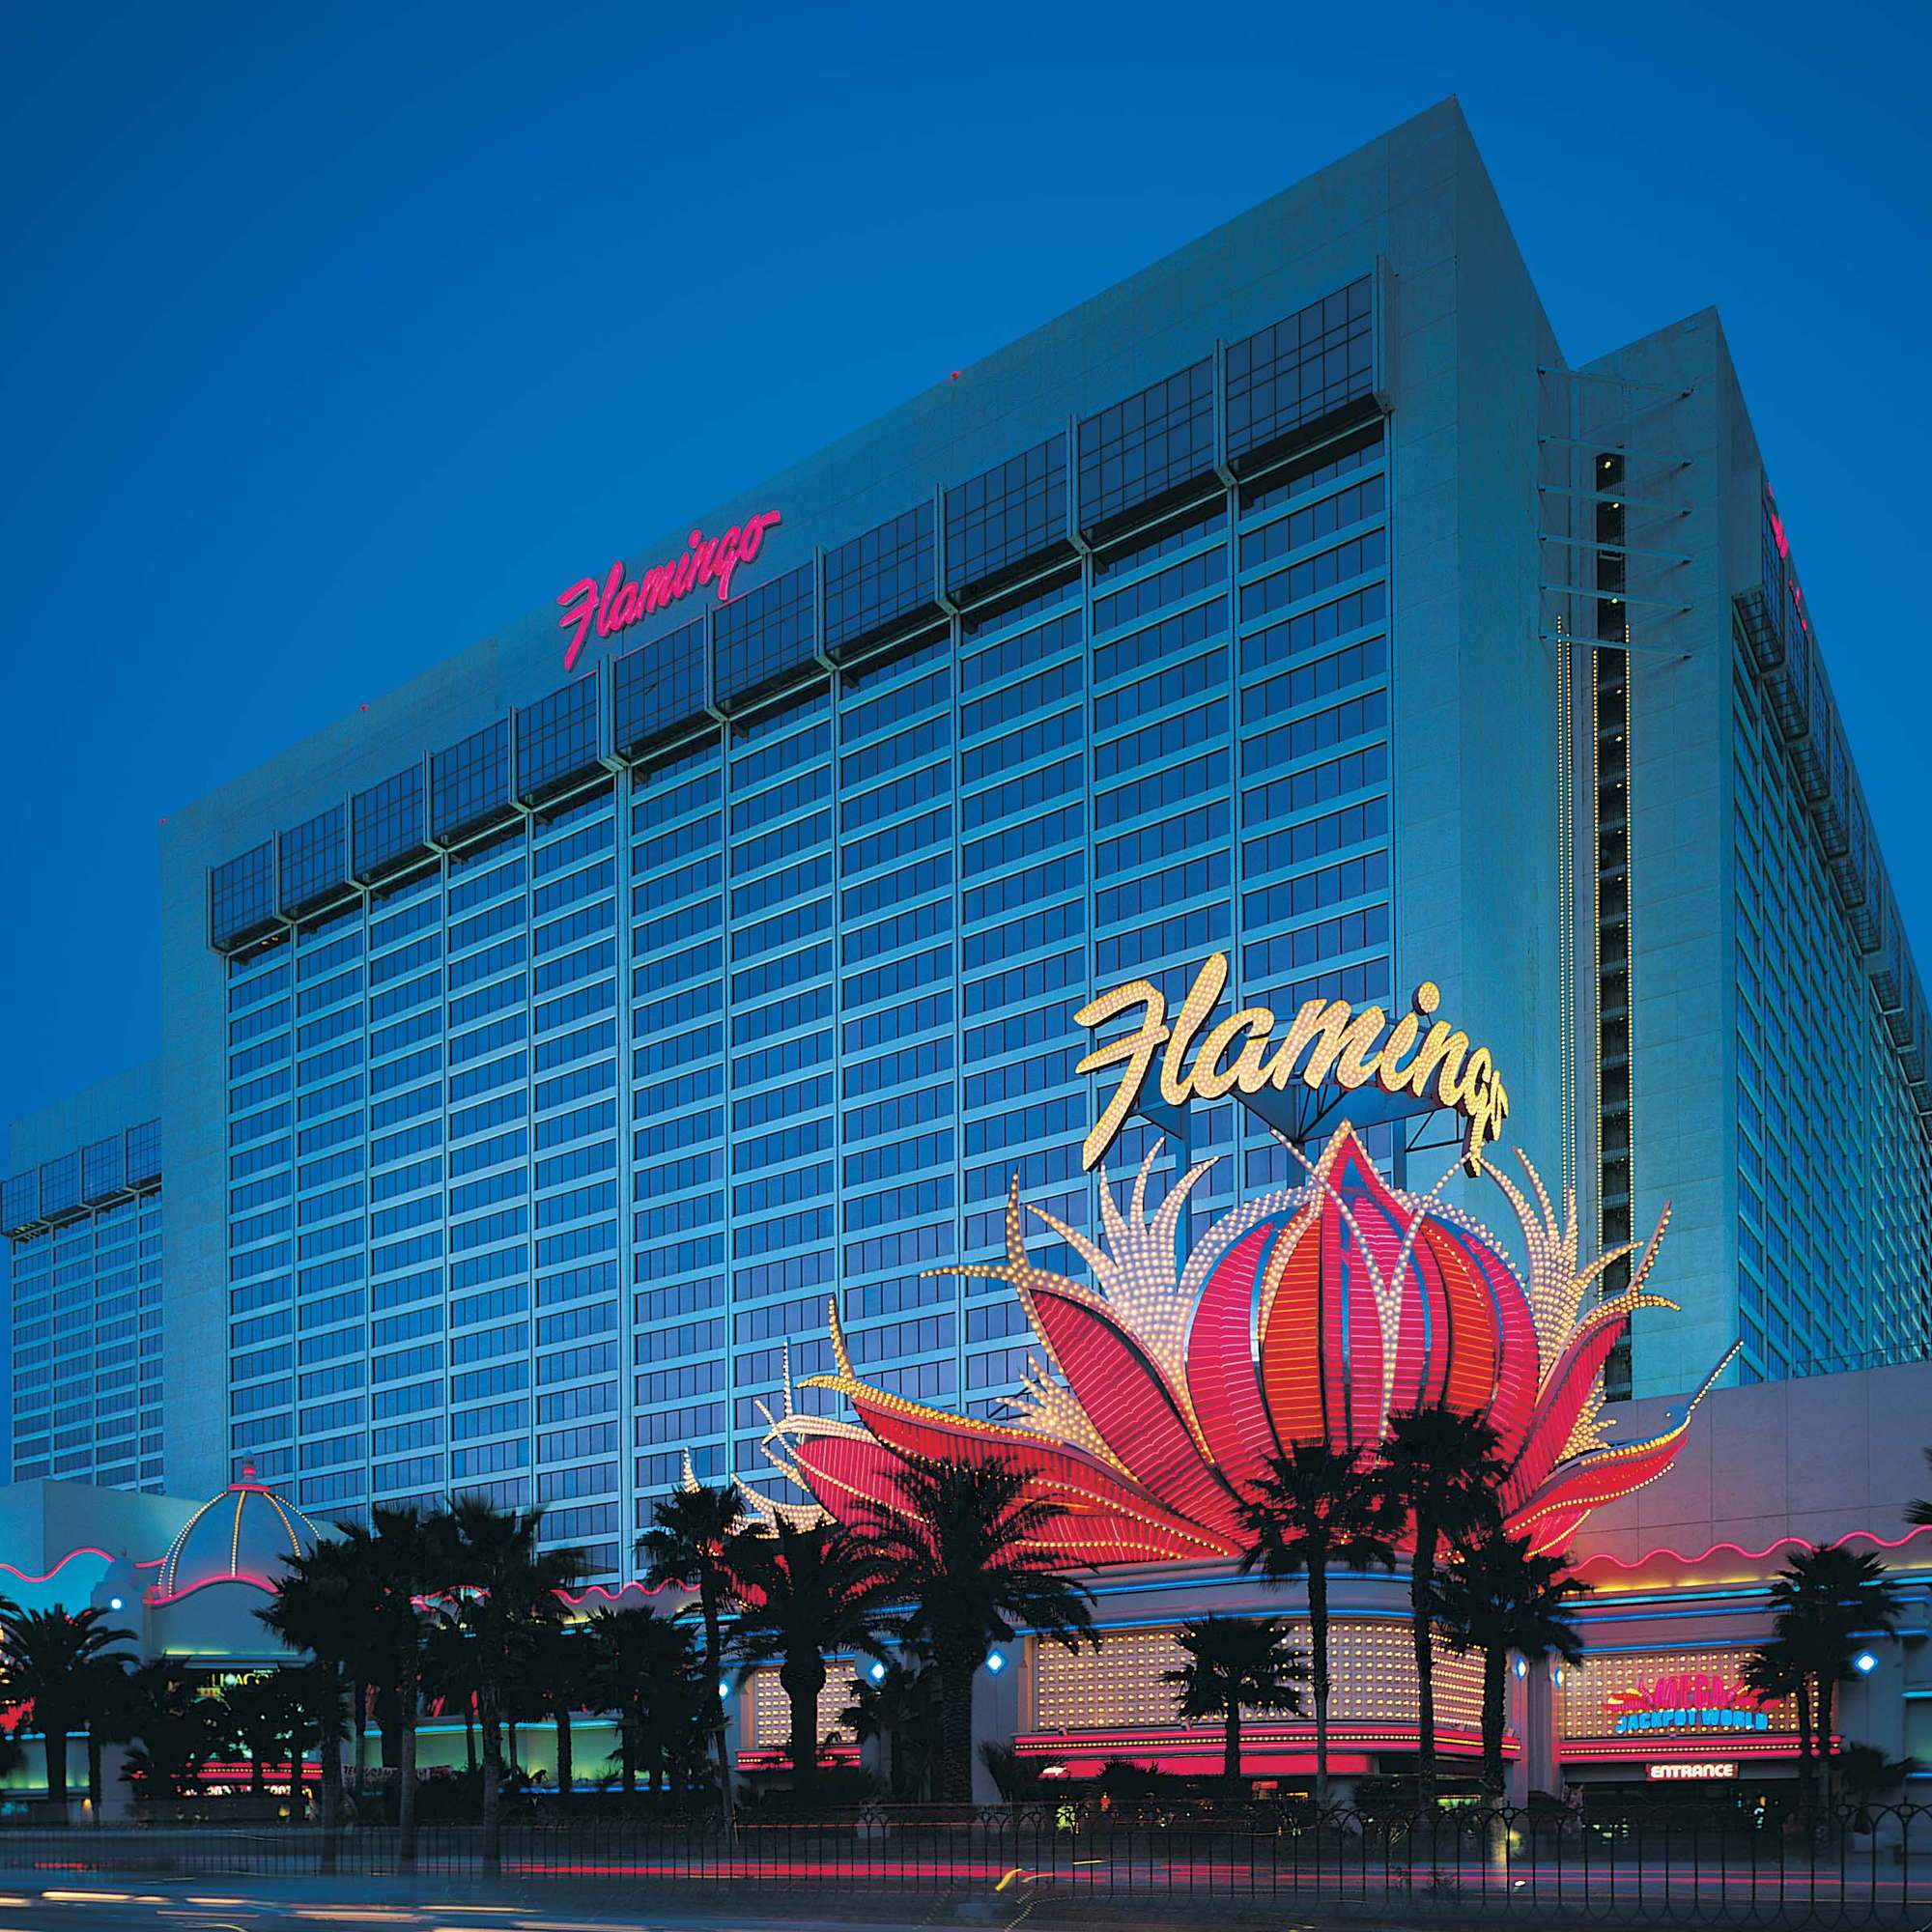 Flamingo Las Vegas Expert Review Fodor S Travel